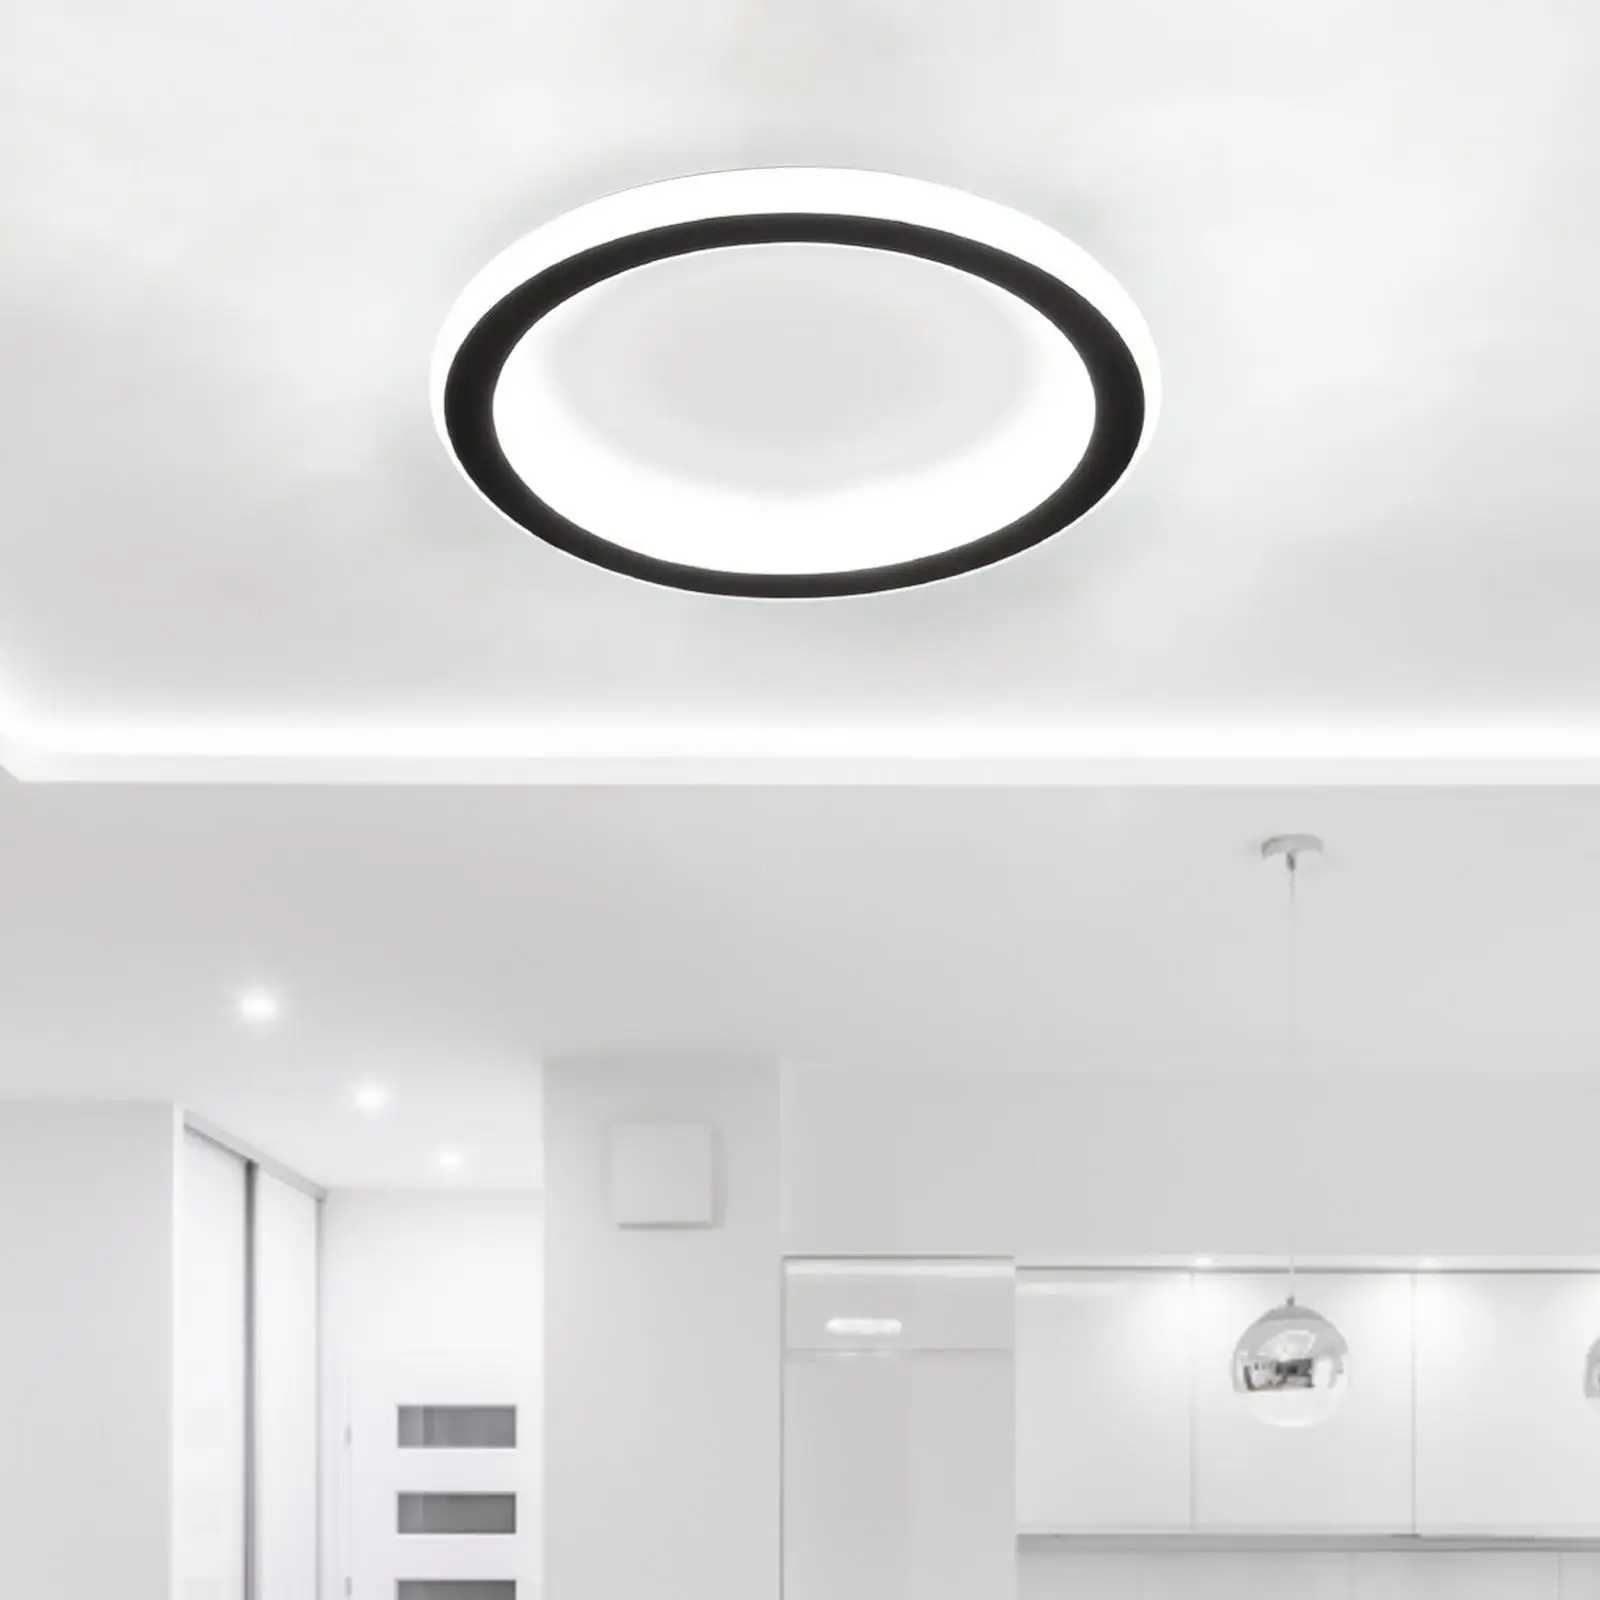 Modern Ceiling Light Lamp Pendant Light Fixture Lighting Decoration for Corridor Restaurant Office Decor Bedroom